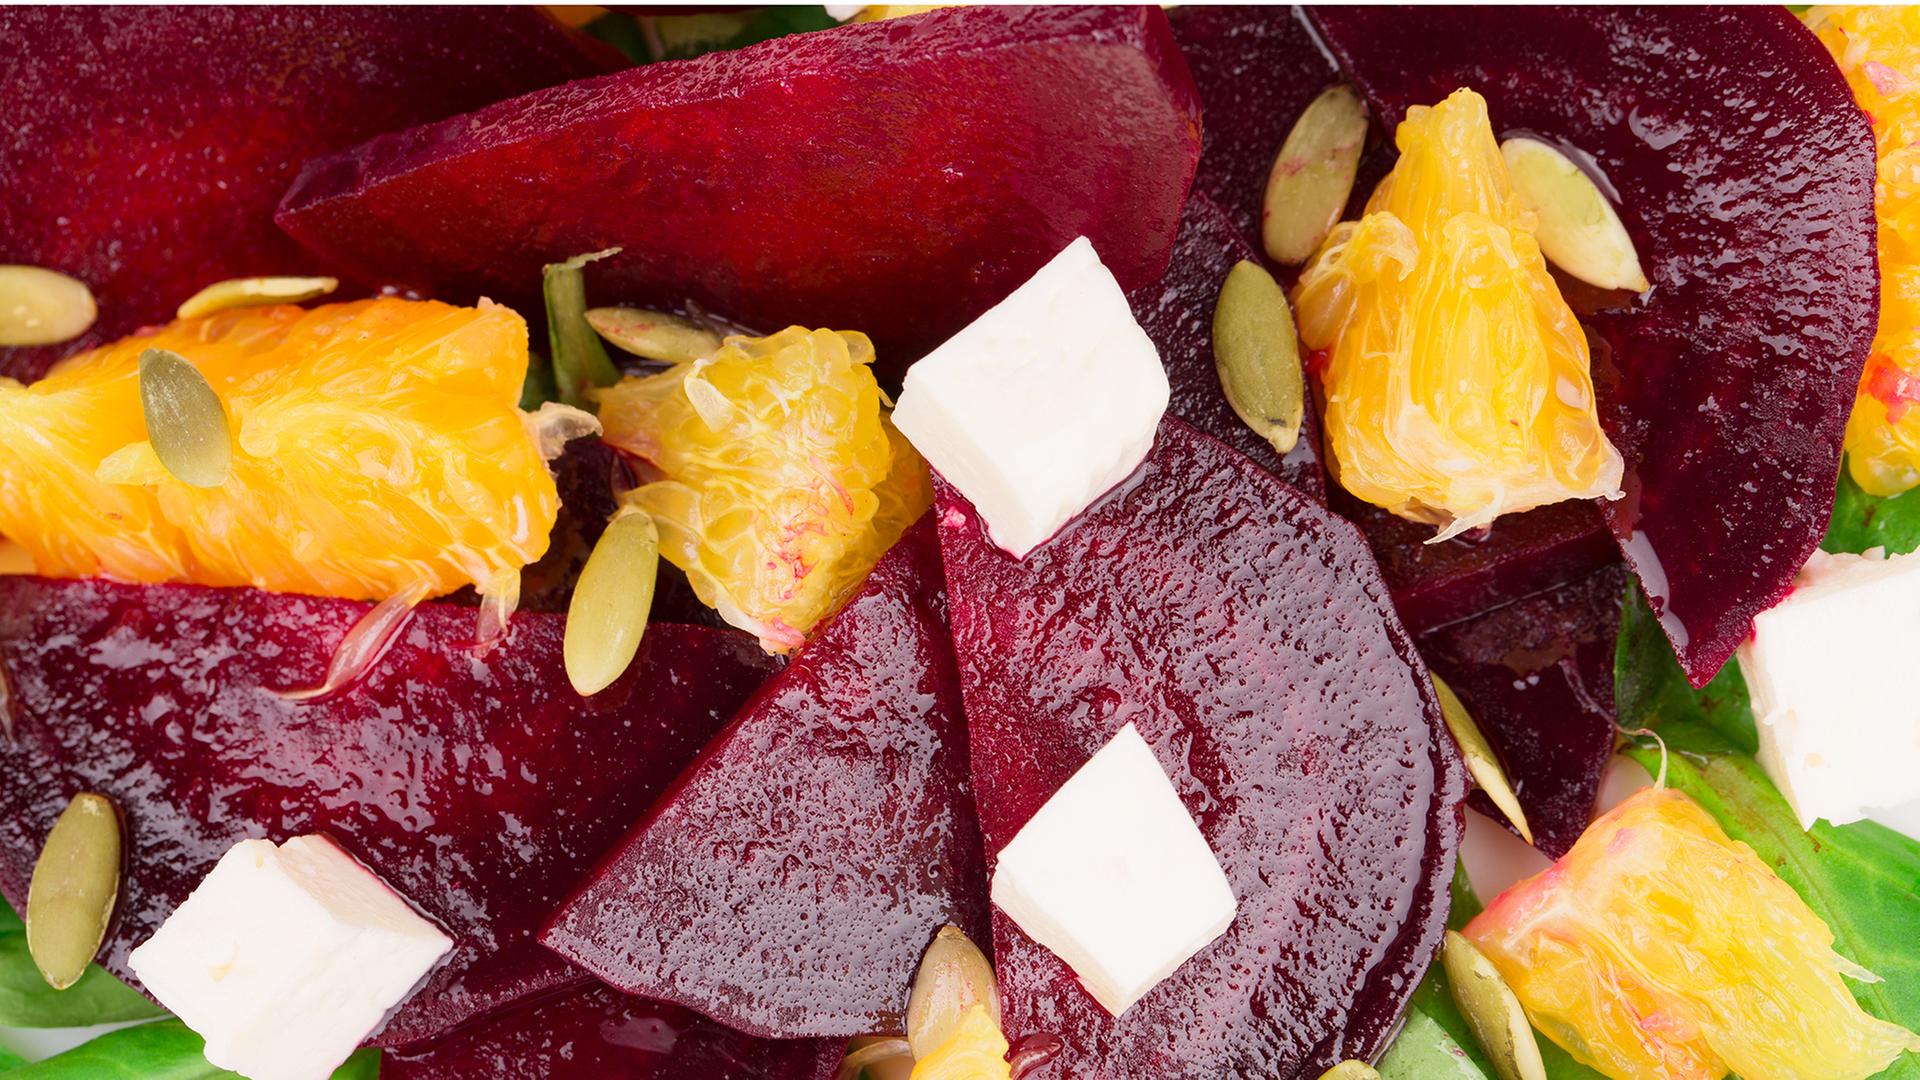 Rezept: Rote Bete-Salat mit Orangen und schwarzen Oliven | hr-fernsehen ...